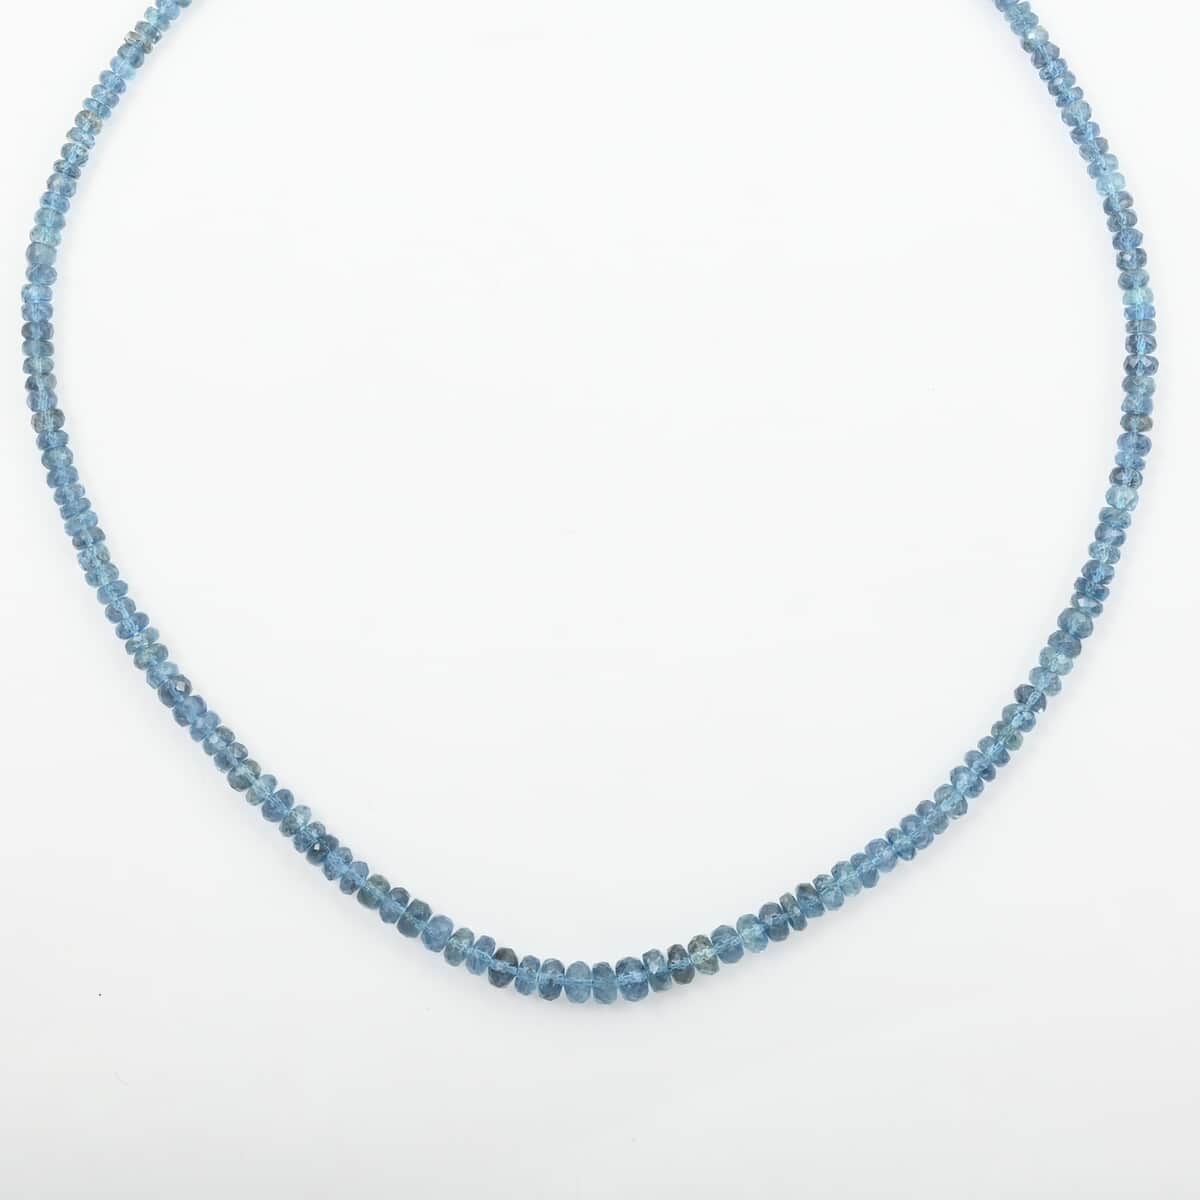 Rhapsody 950 Platinum AAAA Tatu Aquamarine Beaded Graduate Necklace (18-20 Inches) 70.00 ctw image number 3